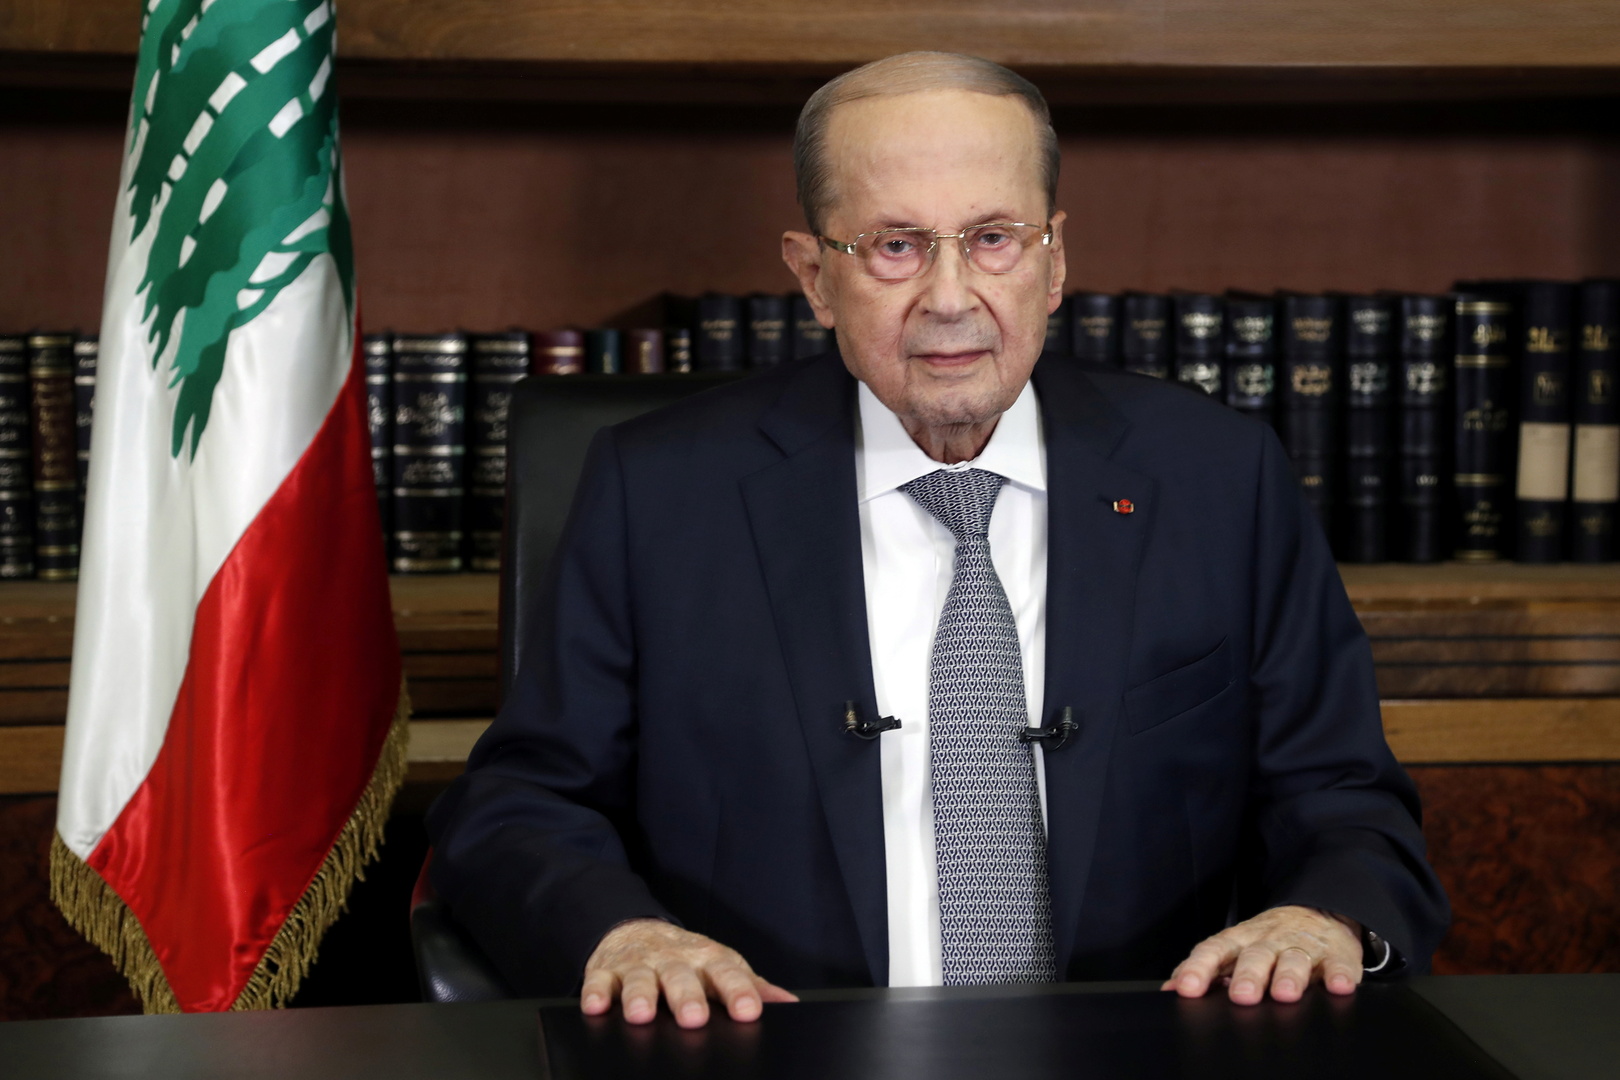 عون يدعو الحريري للتنحي عن تشكيل الحكومة اللبنانية بحال عدم قدرته على ذلك